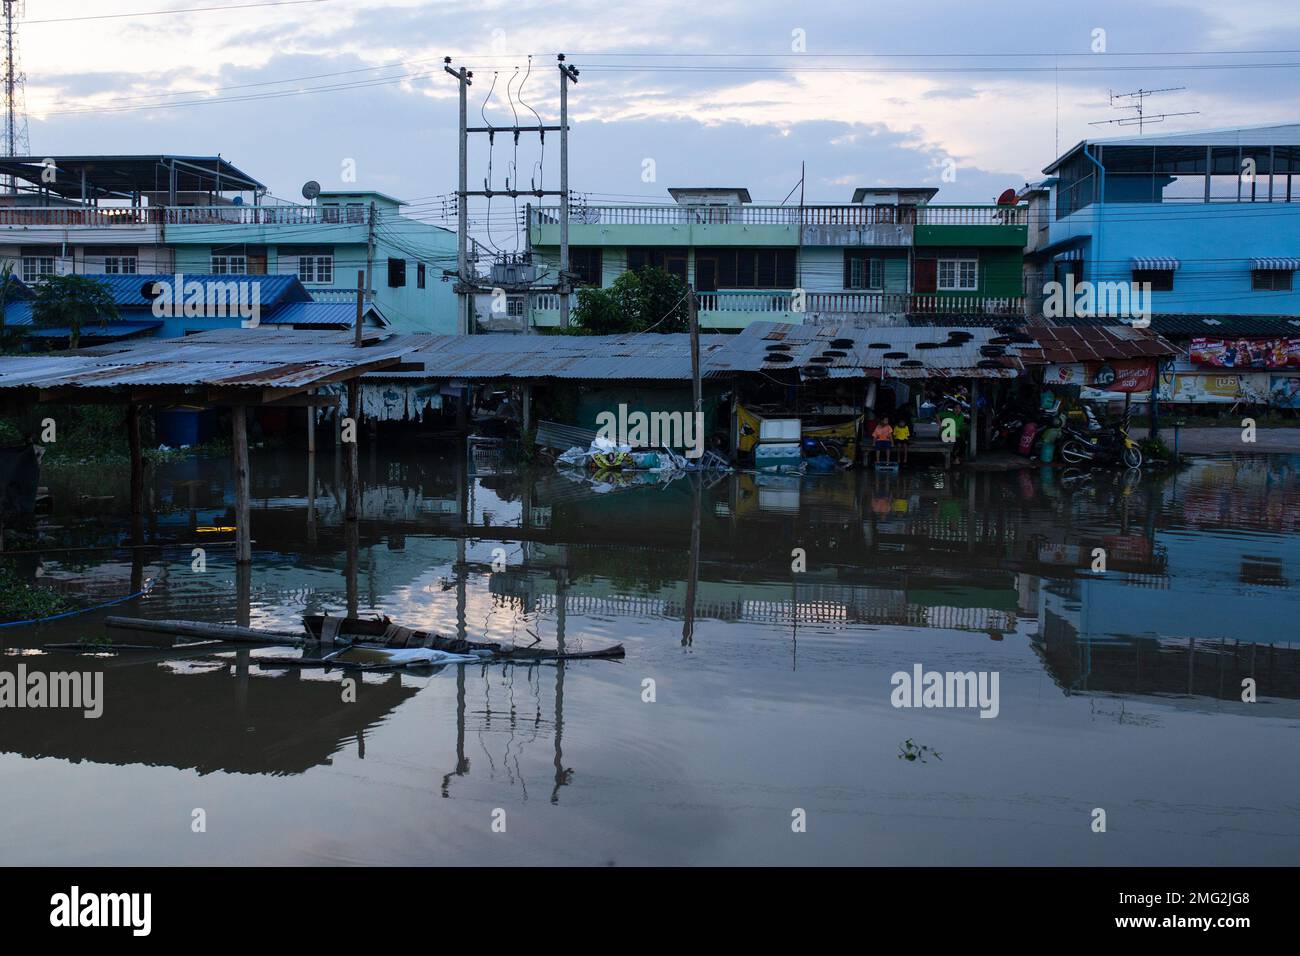 Calles inundadas en el sur de Tailandia después de una intensa tormenta de lluvia - Tailandia Foto de stock